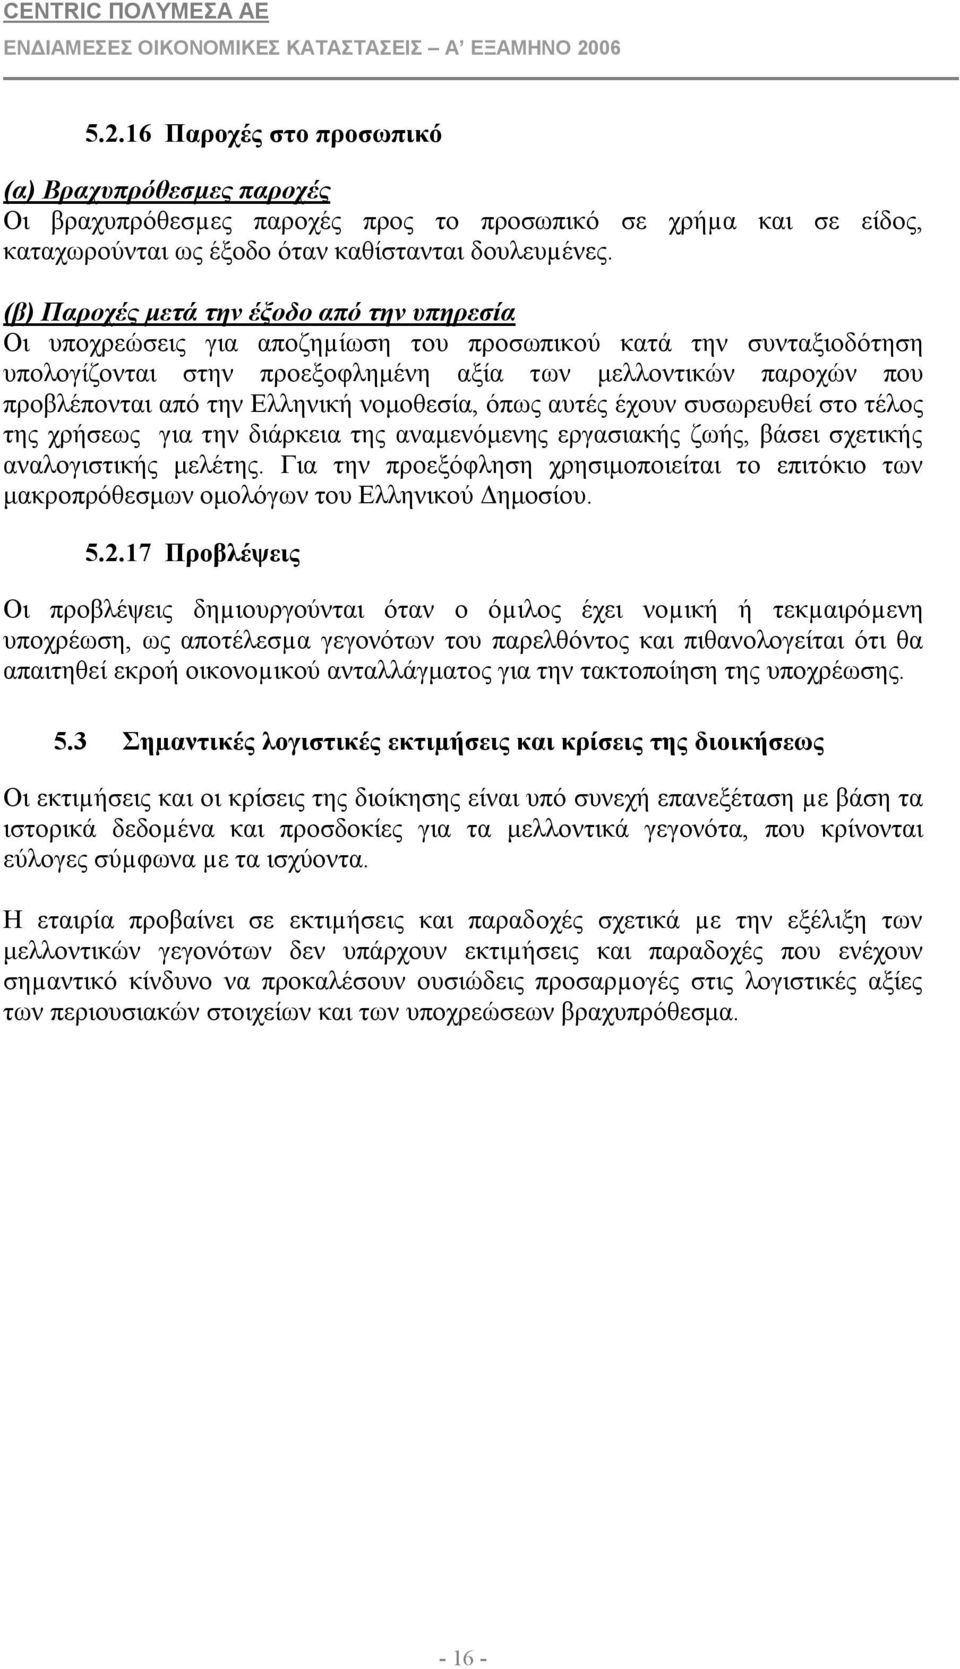 Ελληνική νομοθεσία, όπως αυτές έχουν συσωρευθεί στο τέλος της χρήσεως για την διάρκεια της αναμενόμενης εργασιακής ζωής, βάσει σχετικής αναλογιστικής μελέτης.